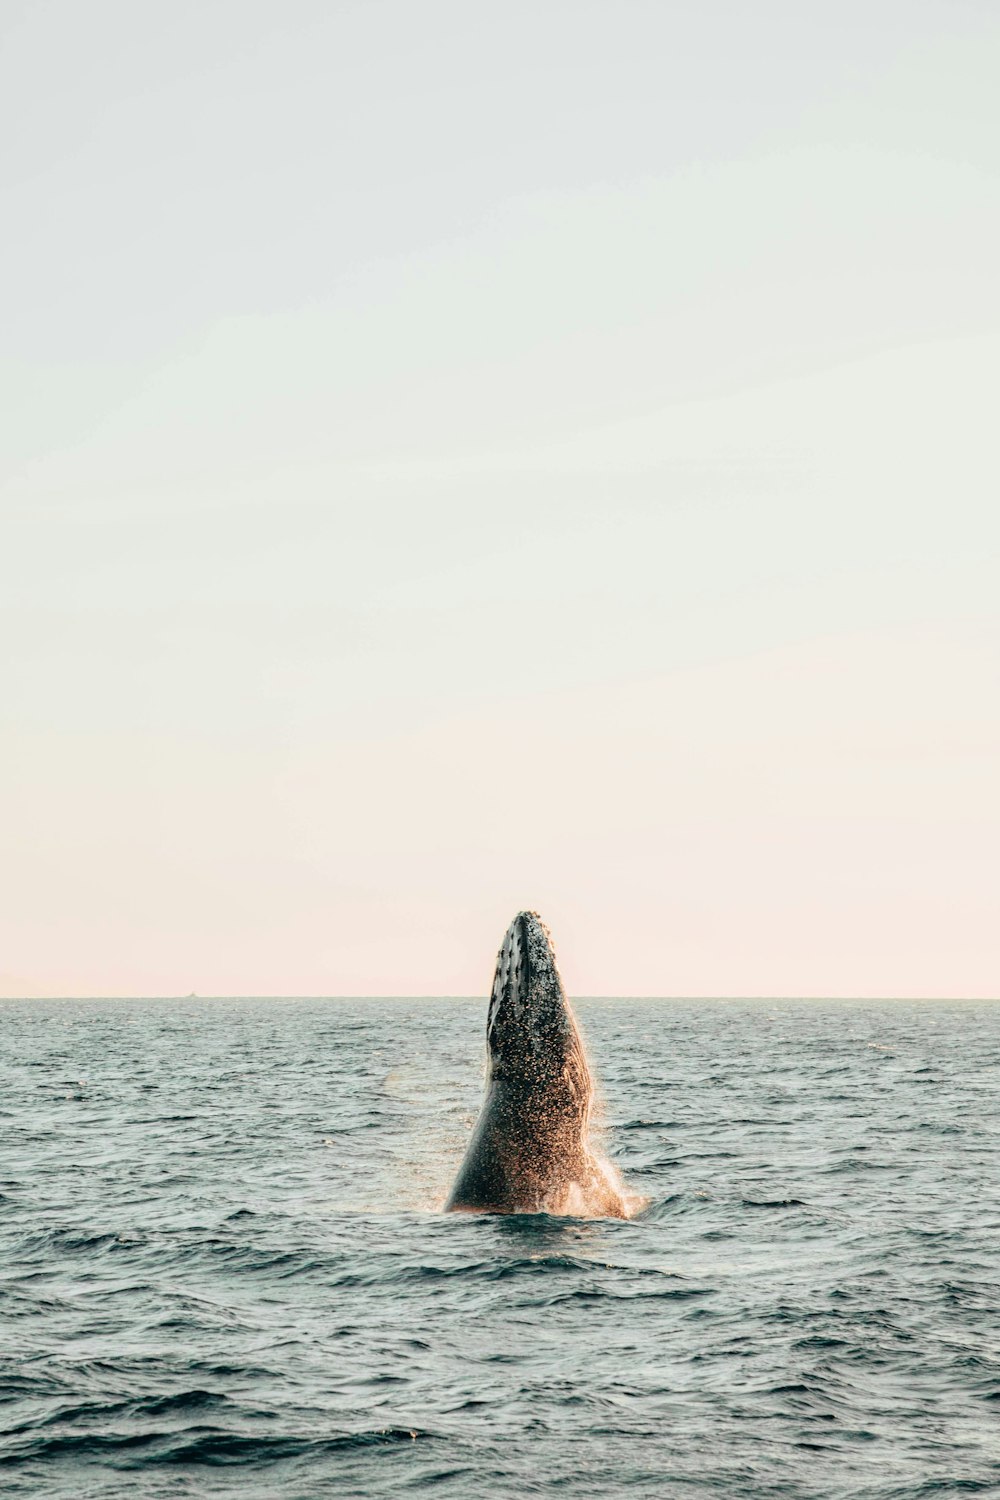 uma baleia jubarte saltando da água